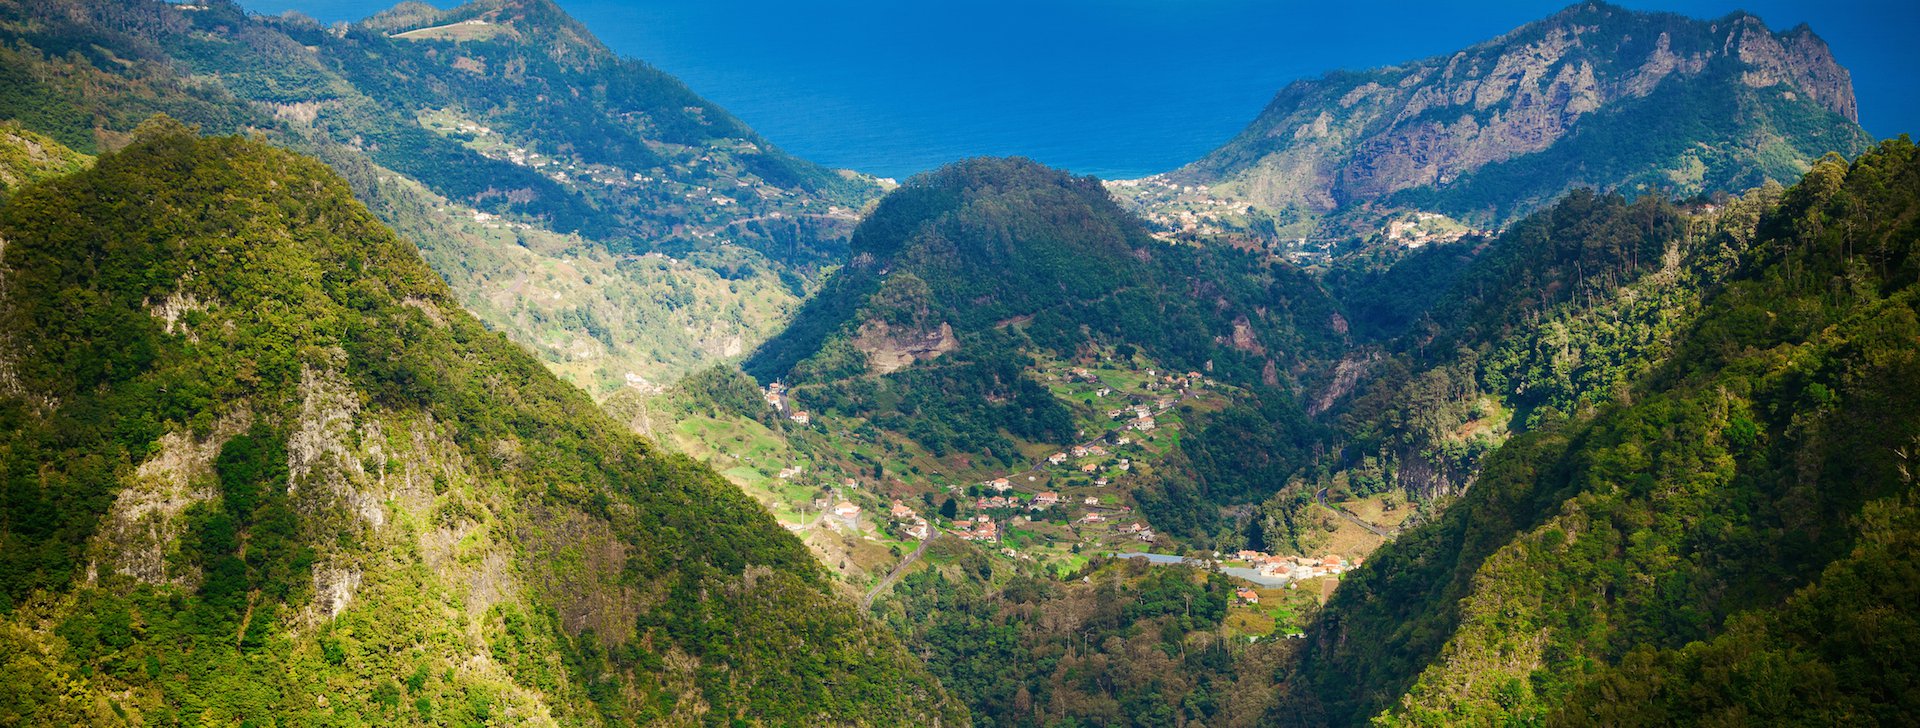 Reiseziele Madeira